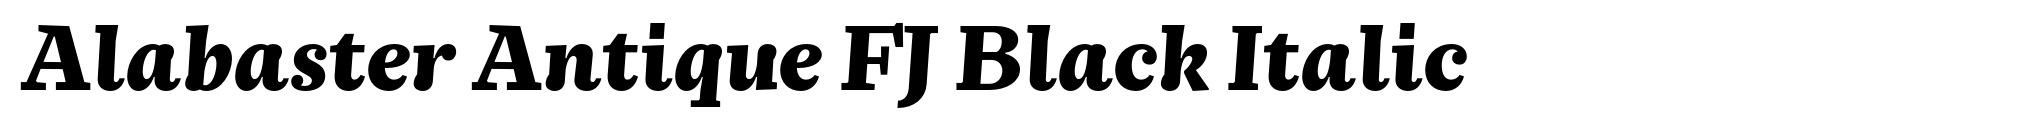 Alabaster Antique FJ Black Italic image